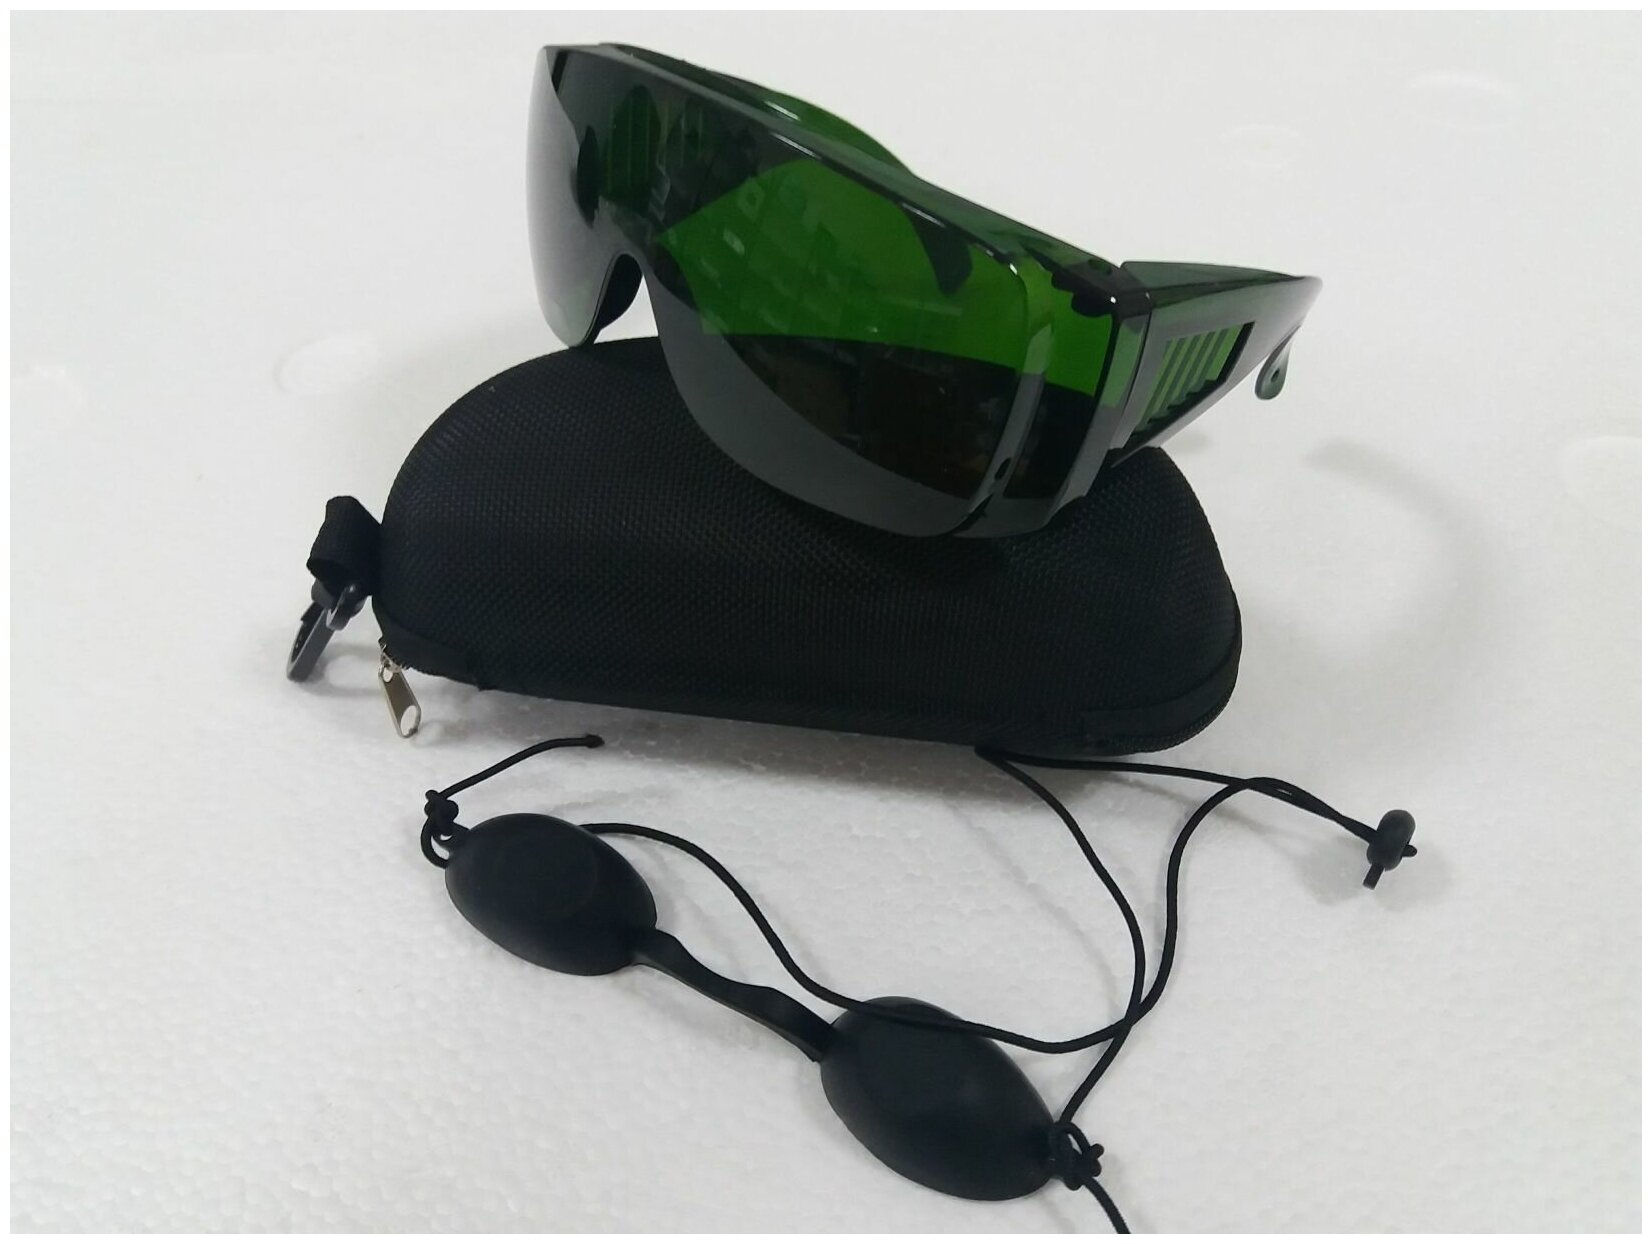 AURO Комплект: профессиональные защитные очки для лазерной эпиляции (зеленые) + очки пациента NEW